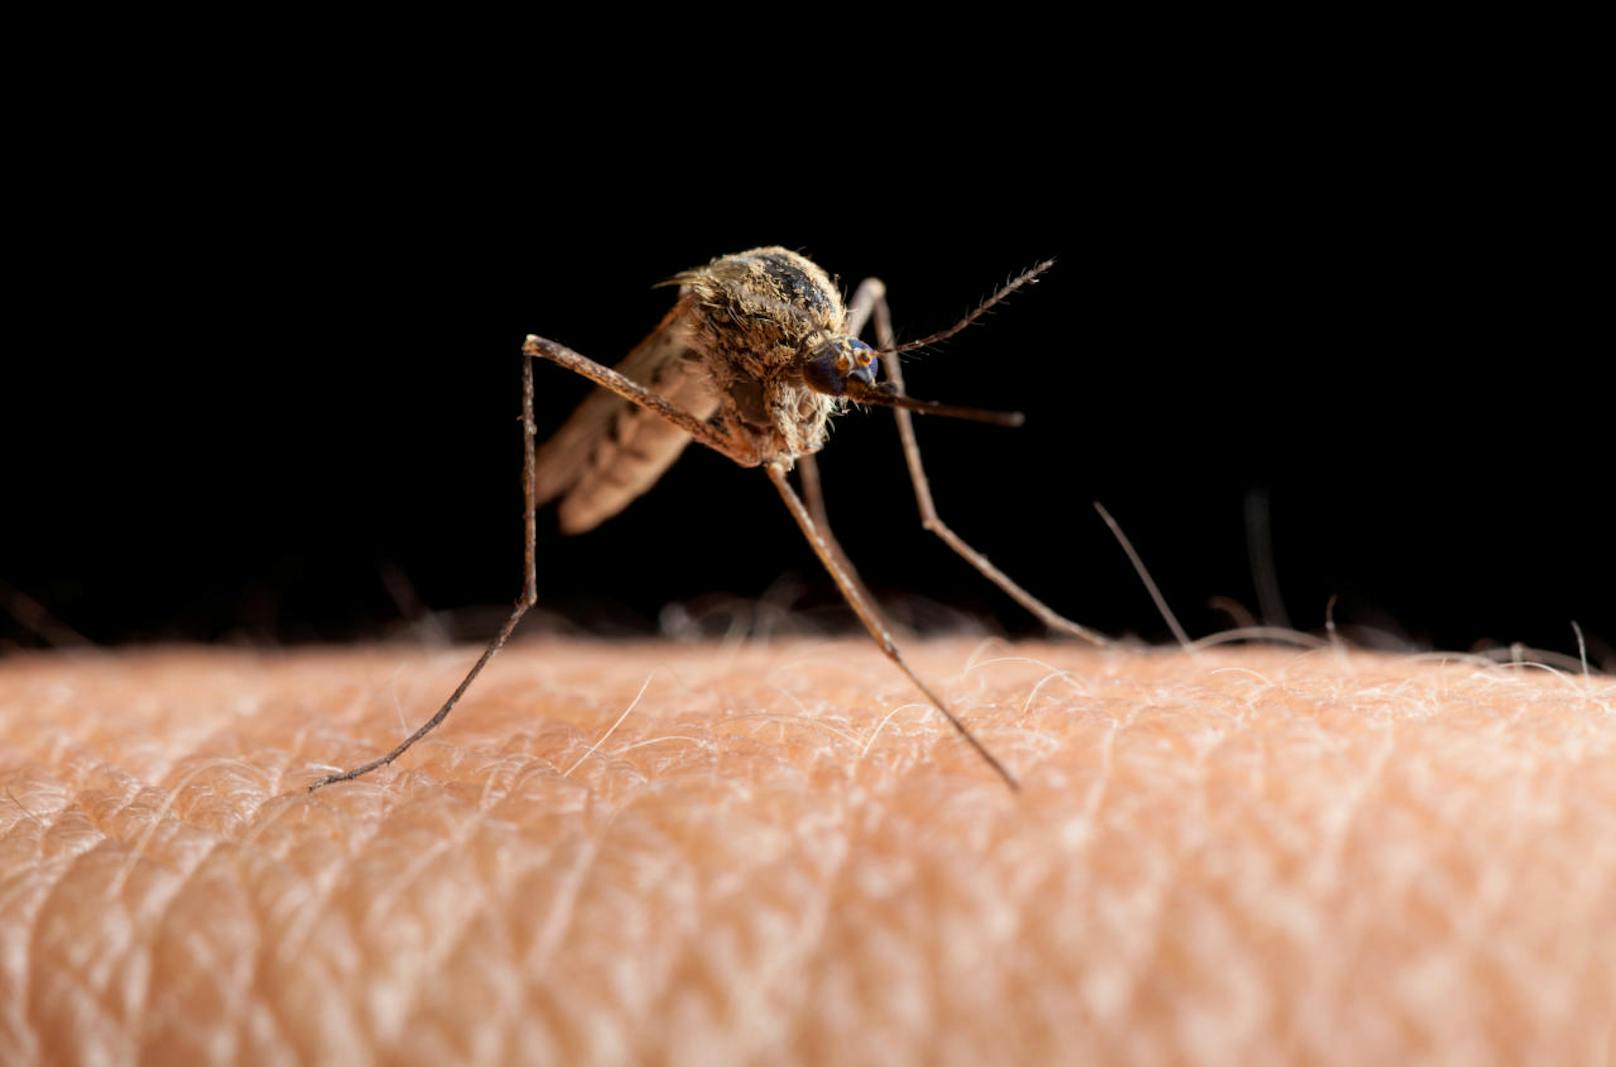 Mücken töten mehr Menschen als jedes andere Tier. Das liegt daran, dass sie die Überträger tödlicher Viren und Parasiten sind.